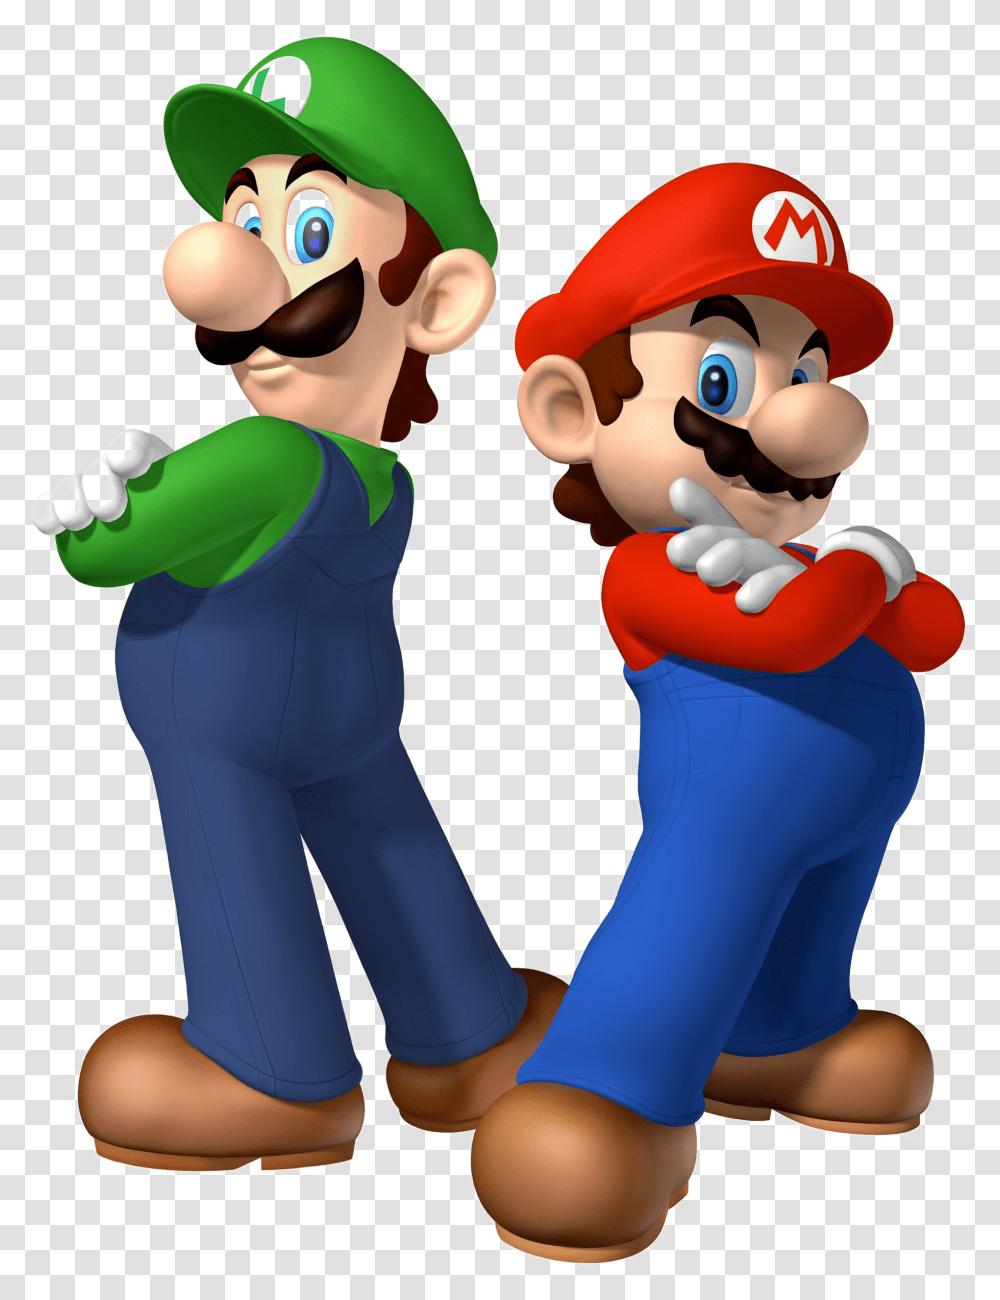 Mario And Luigi Image Mario Bros And Luigi, Super Mario, Person Transparent Png